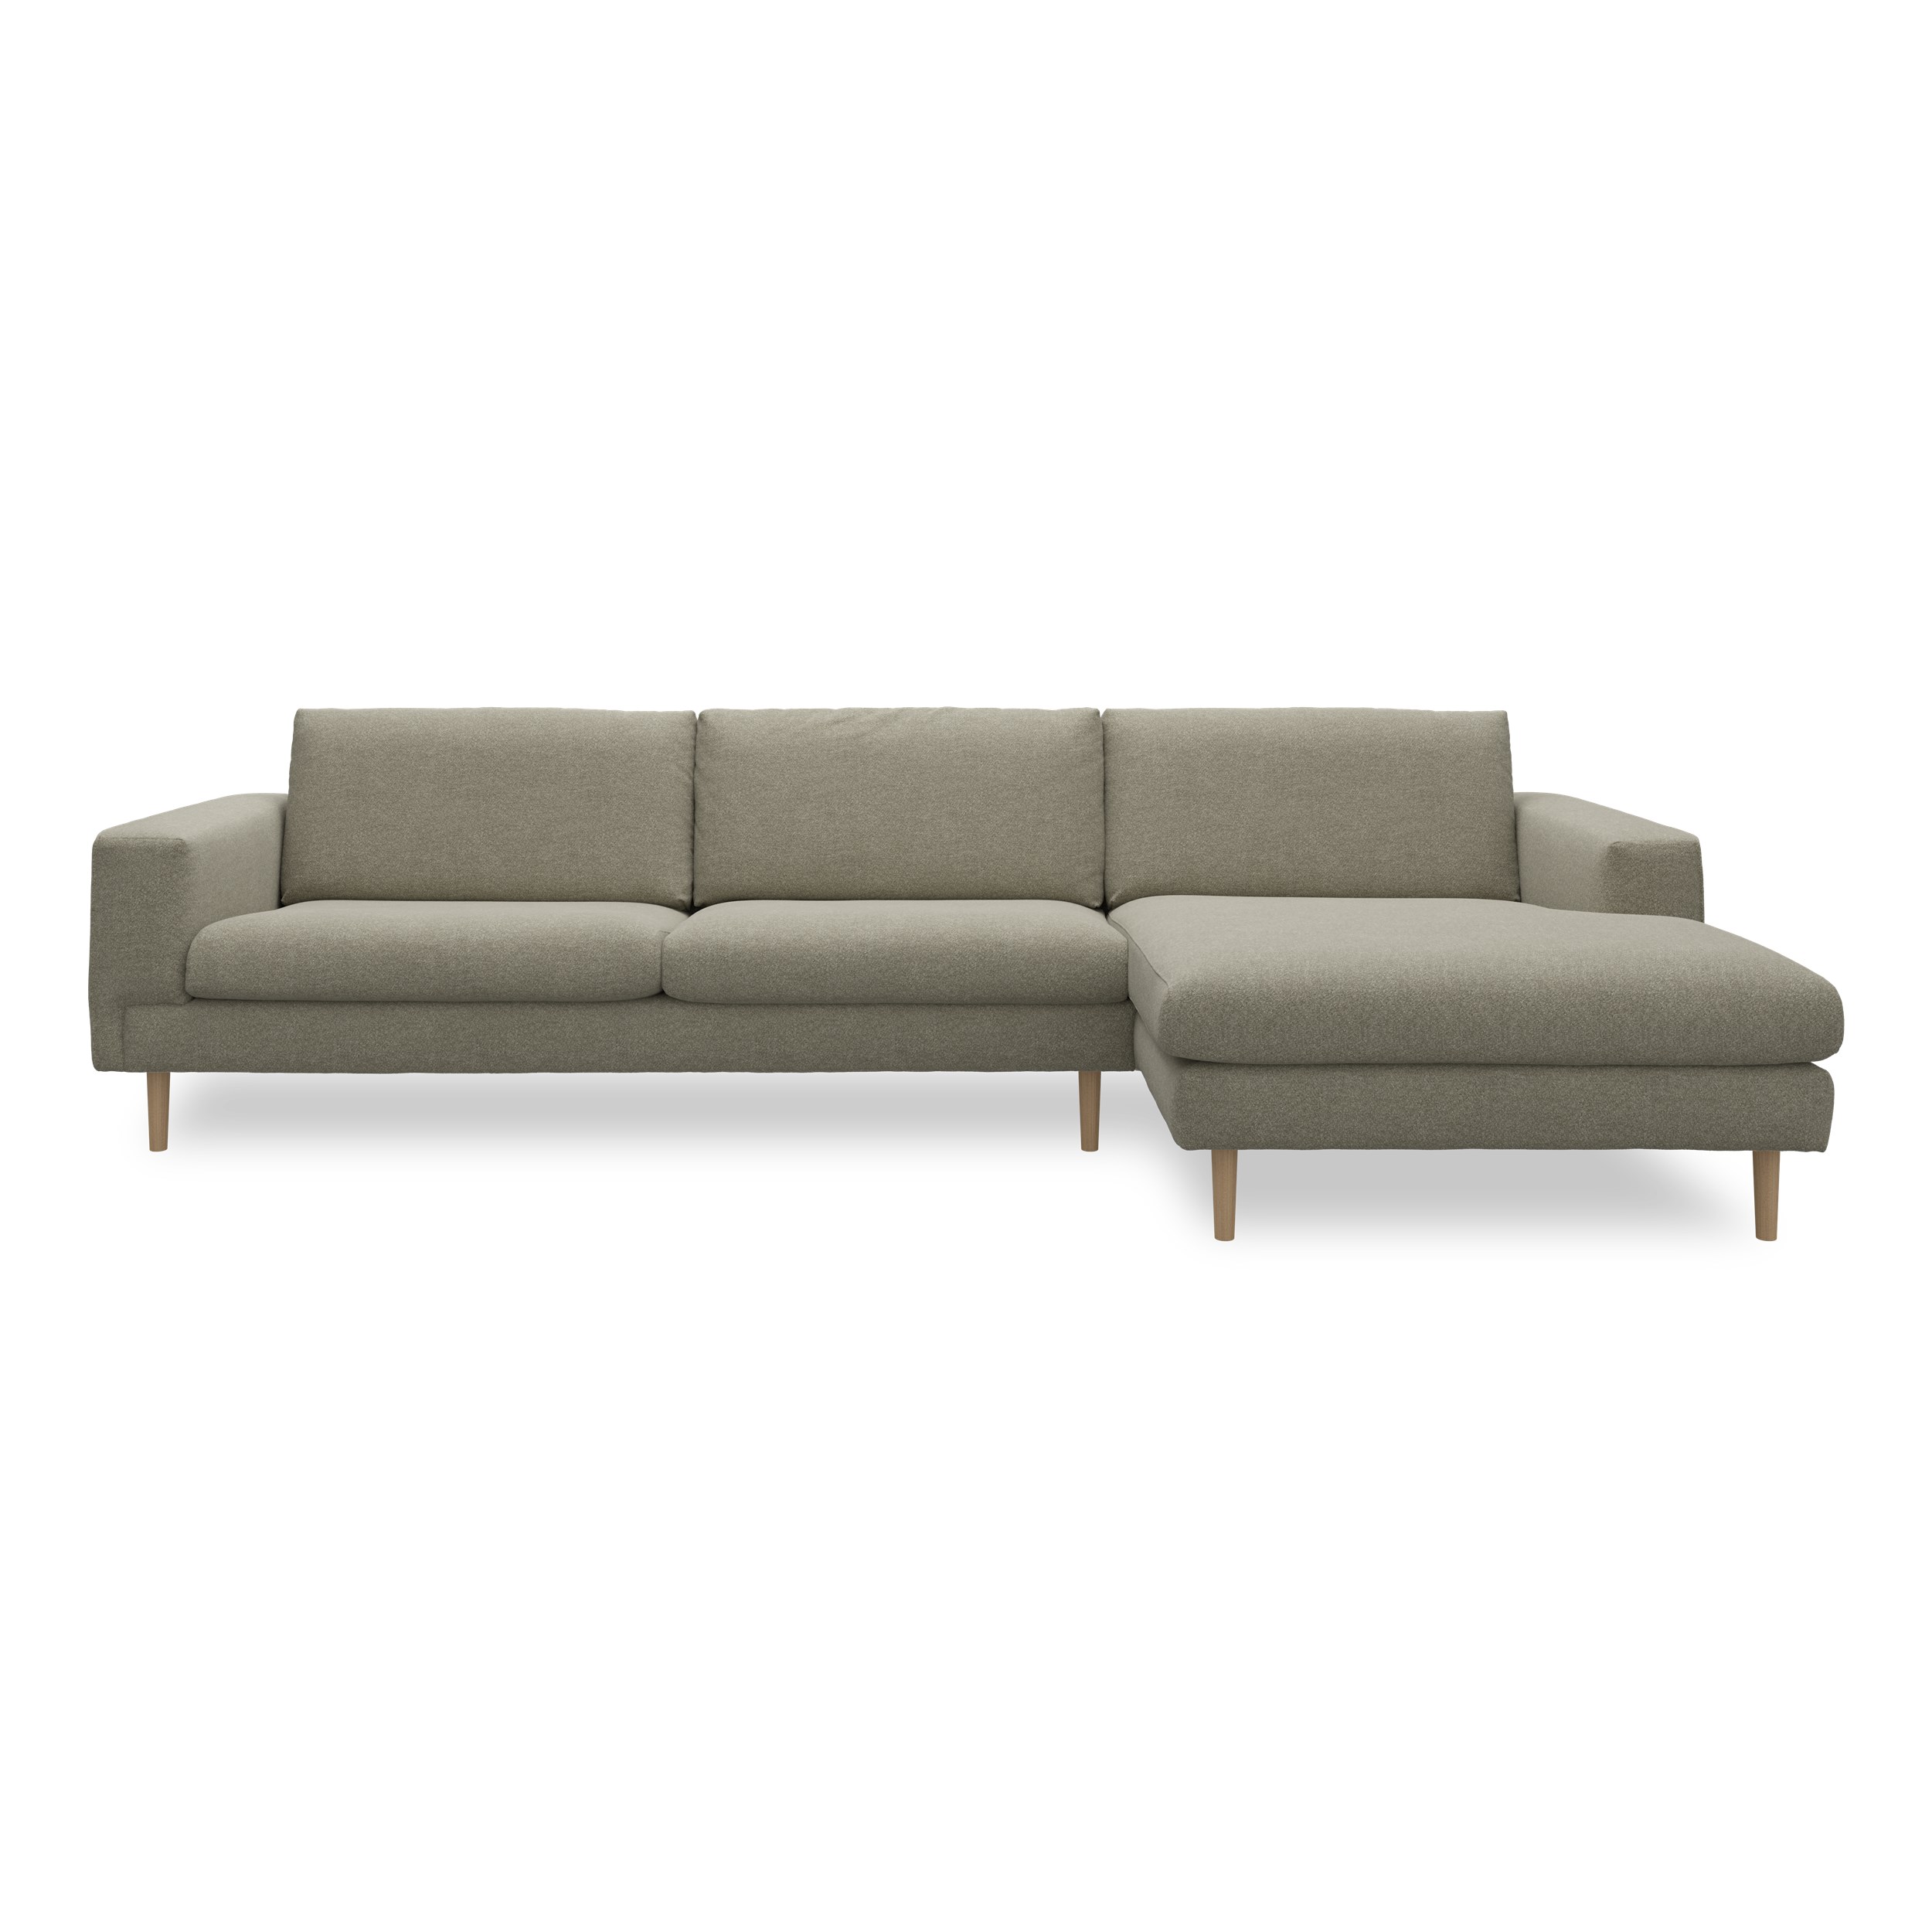 Nyland højrevendt sofa med chaiselong 